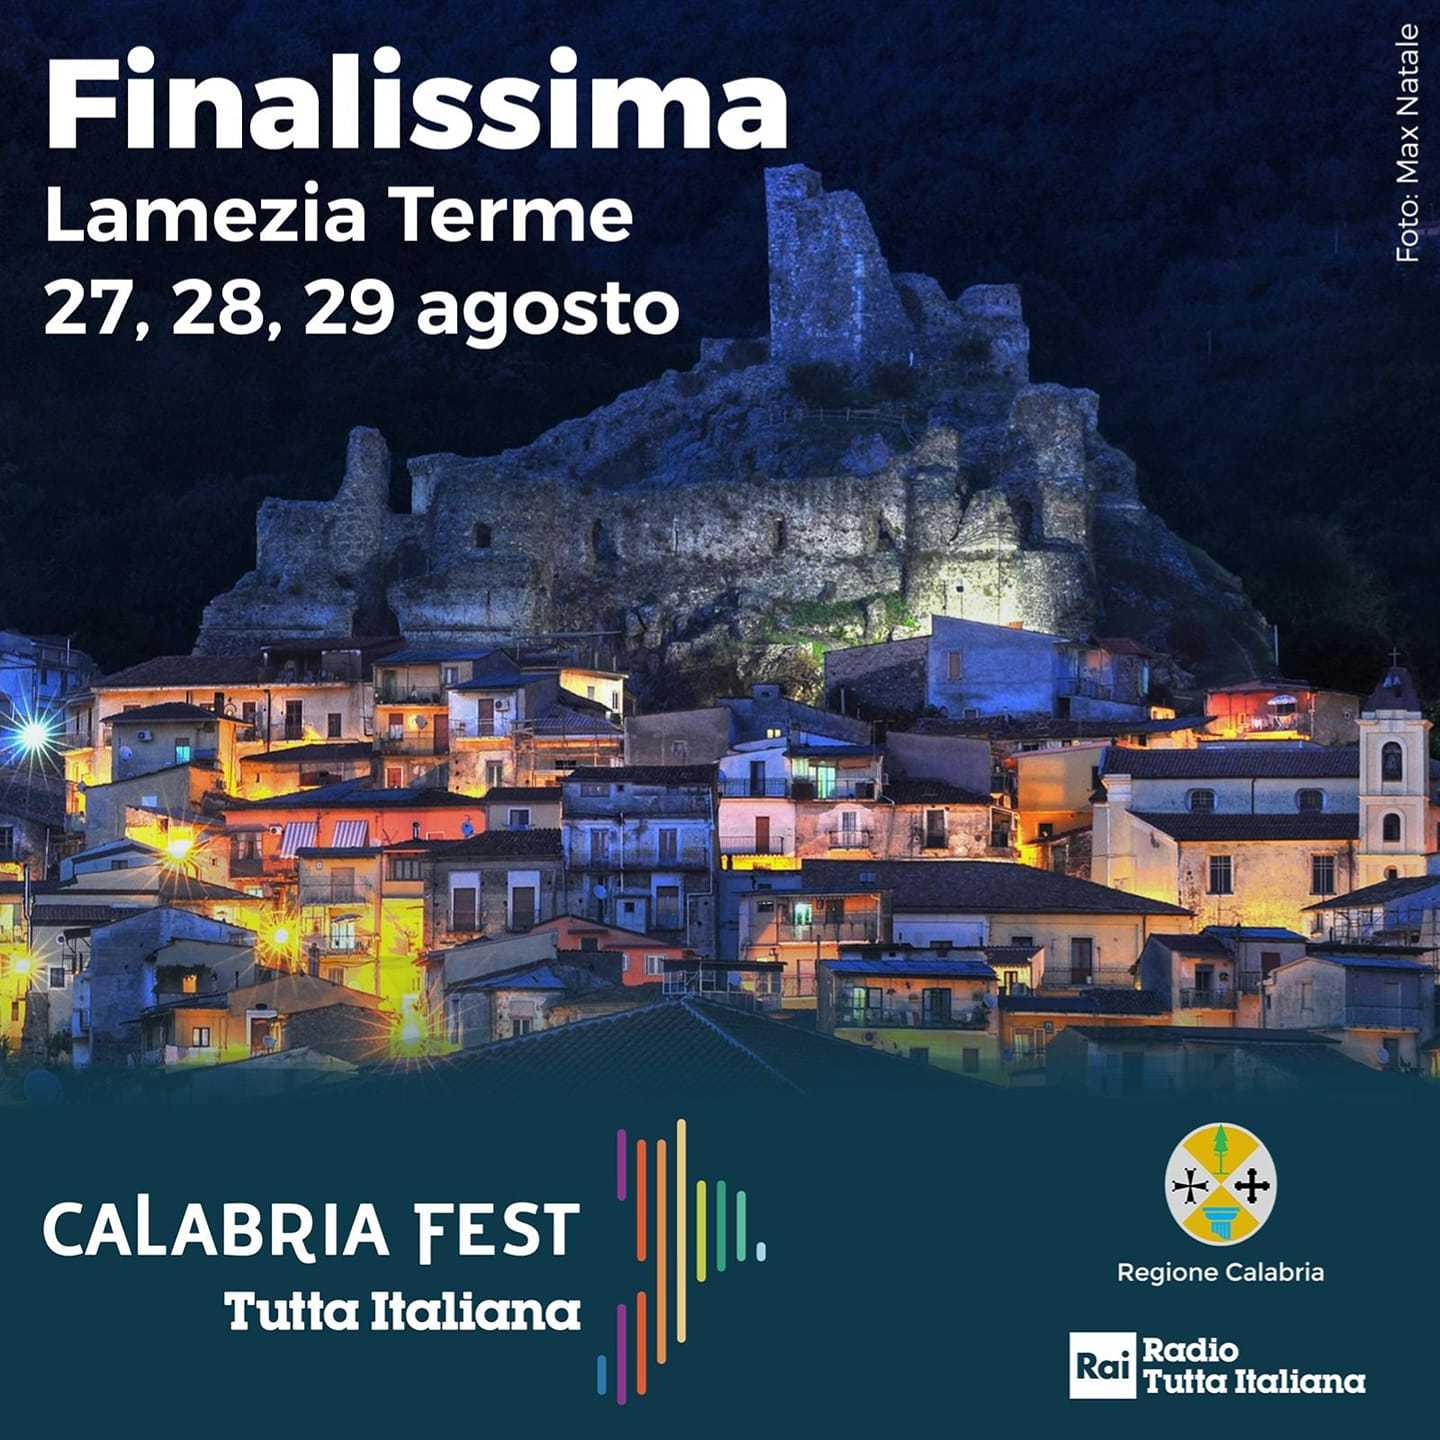 Ufficializzati gli ospiti della finalissima di Lamezia Terme del “Calabria Fest Tutta Italiana"